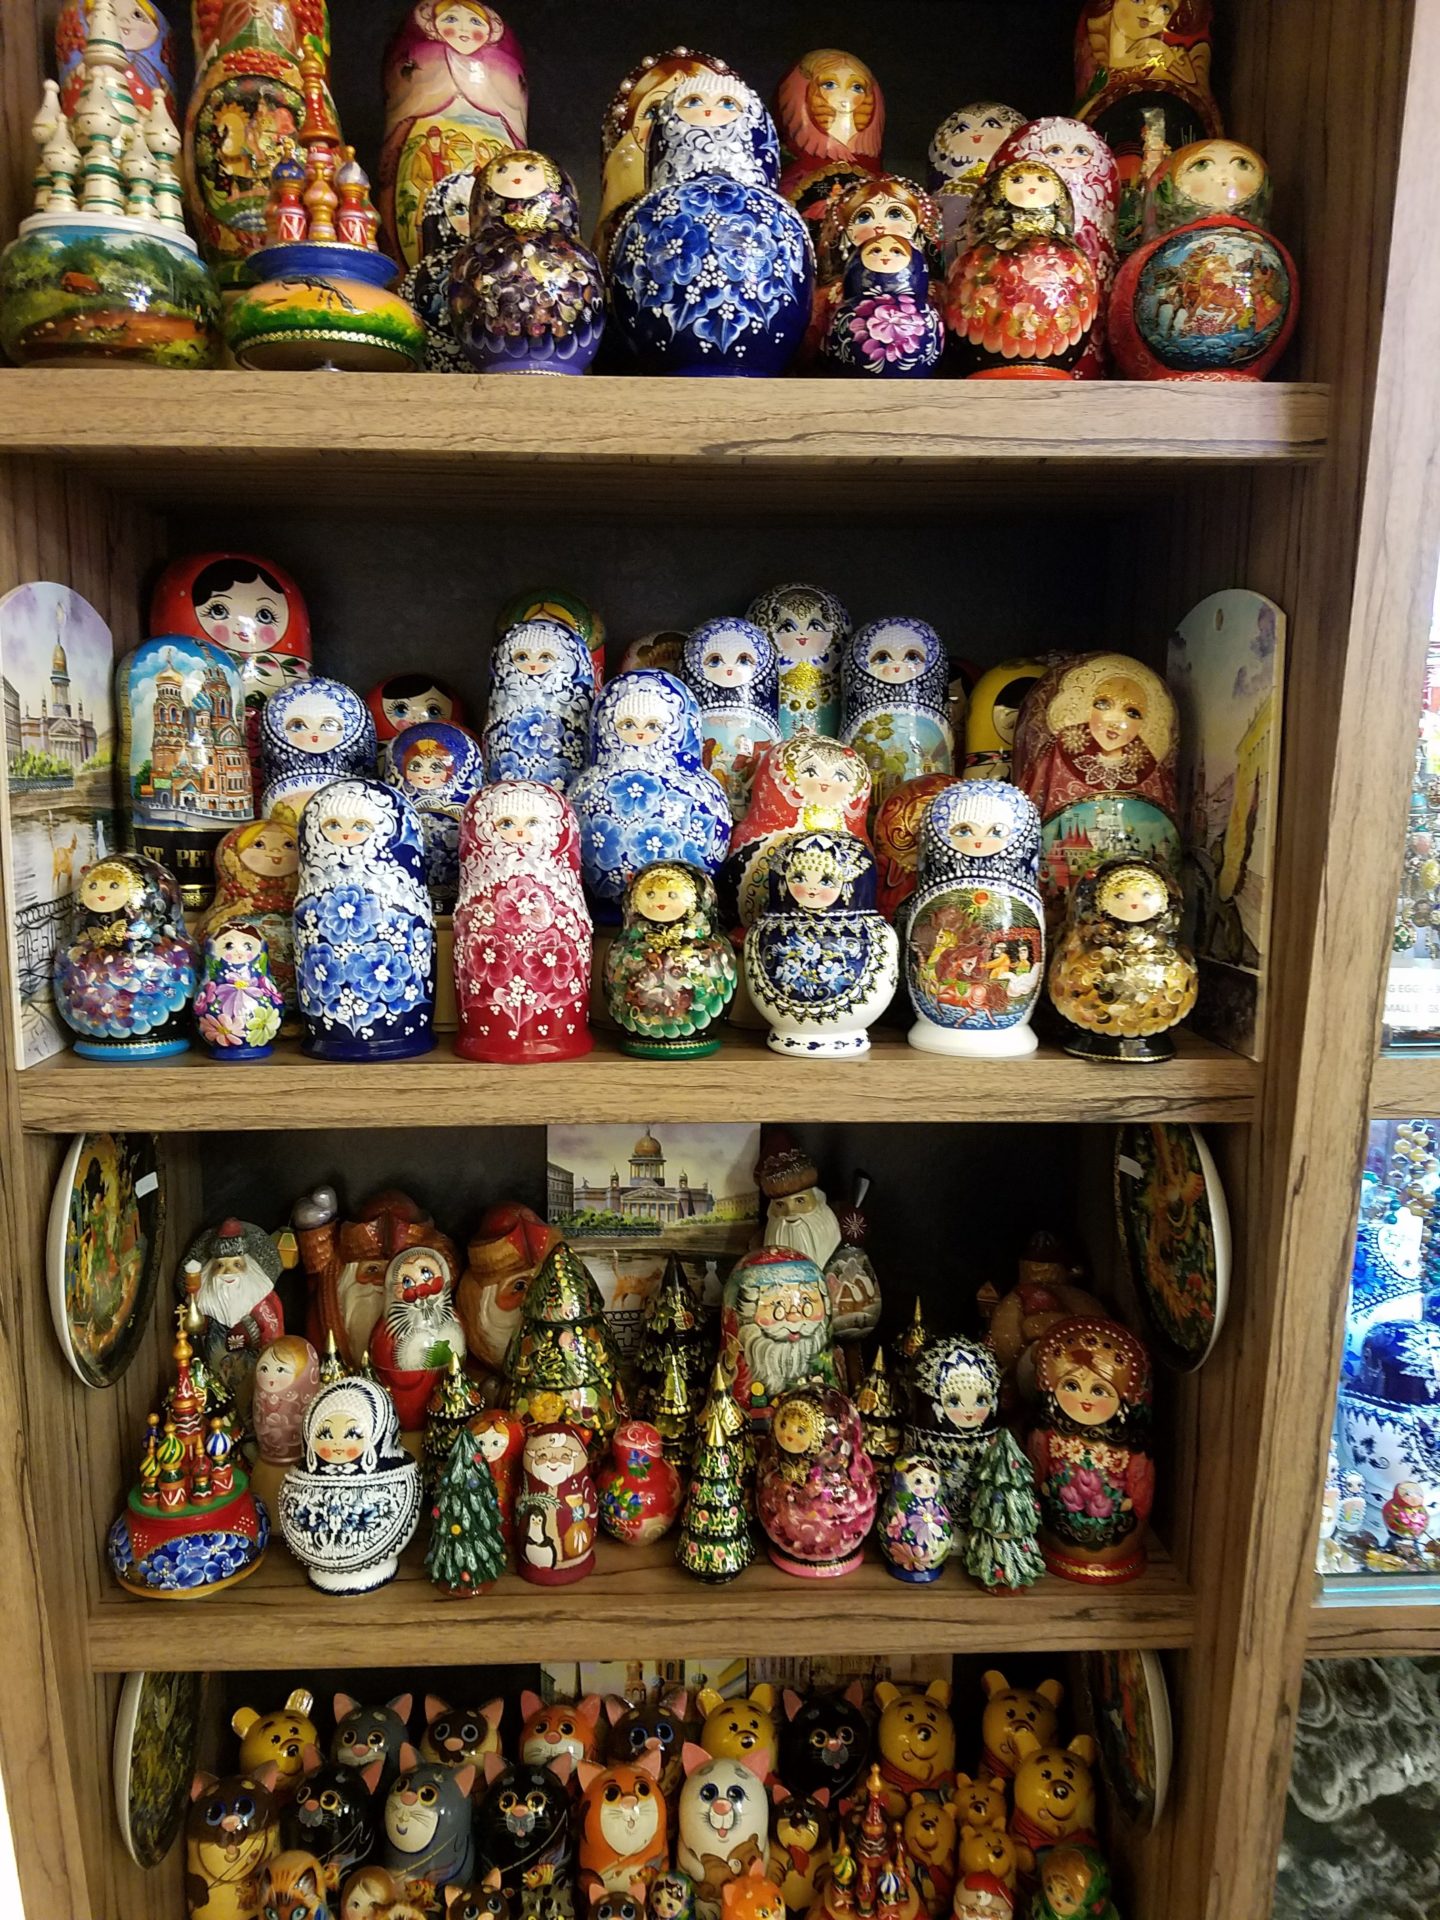 a shelf full of colorful nesting dolls